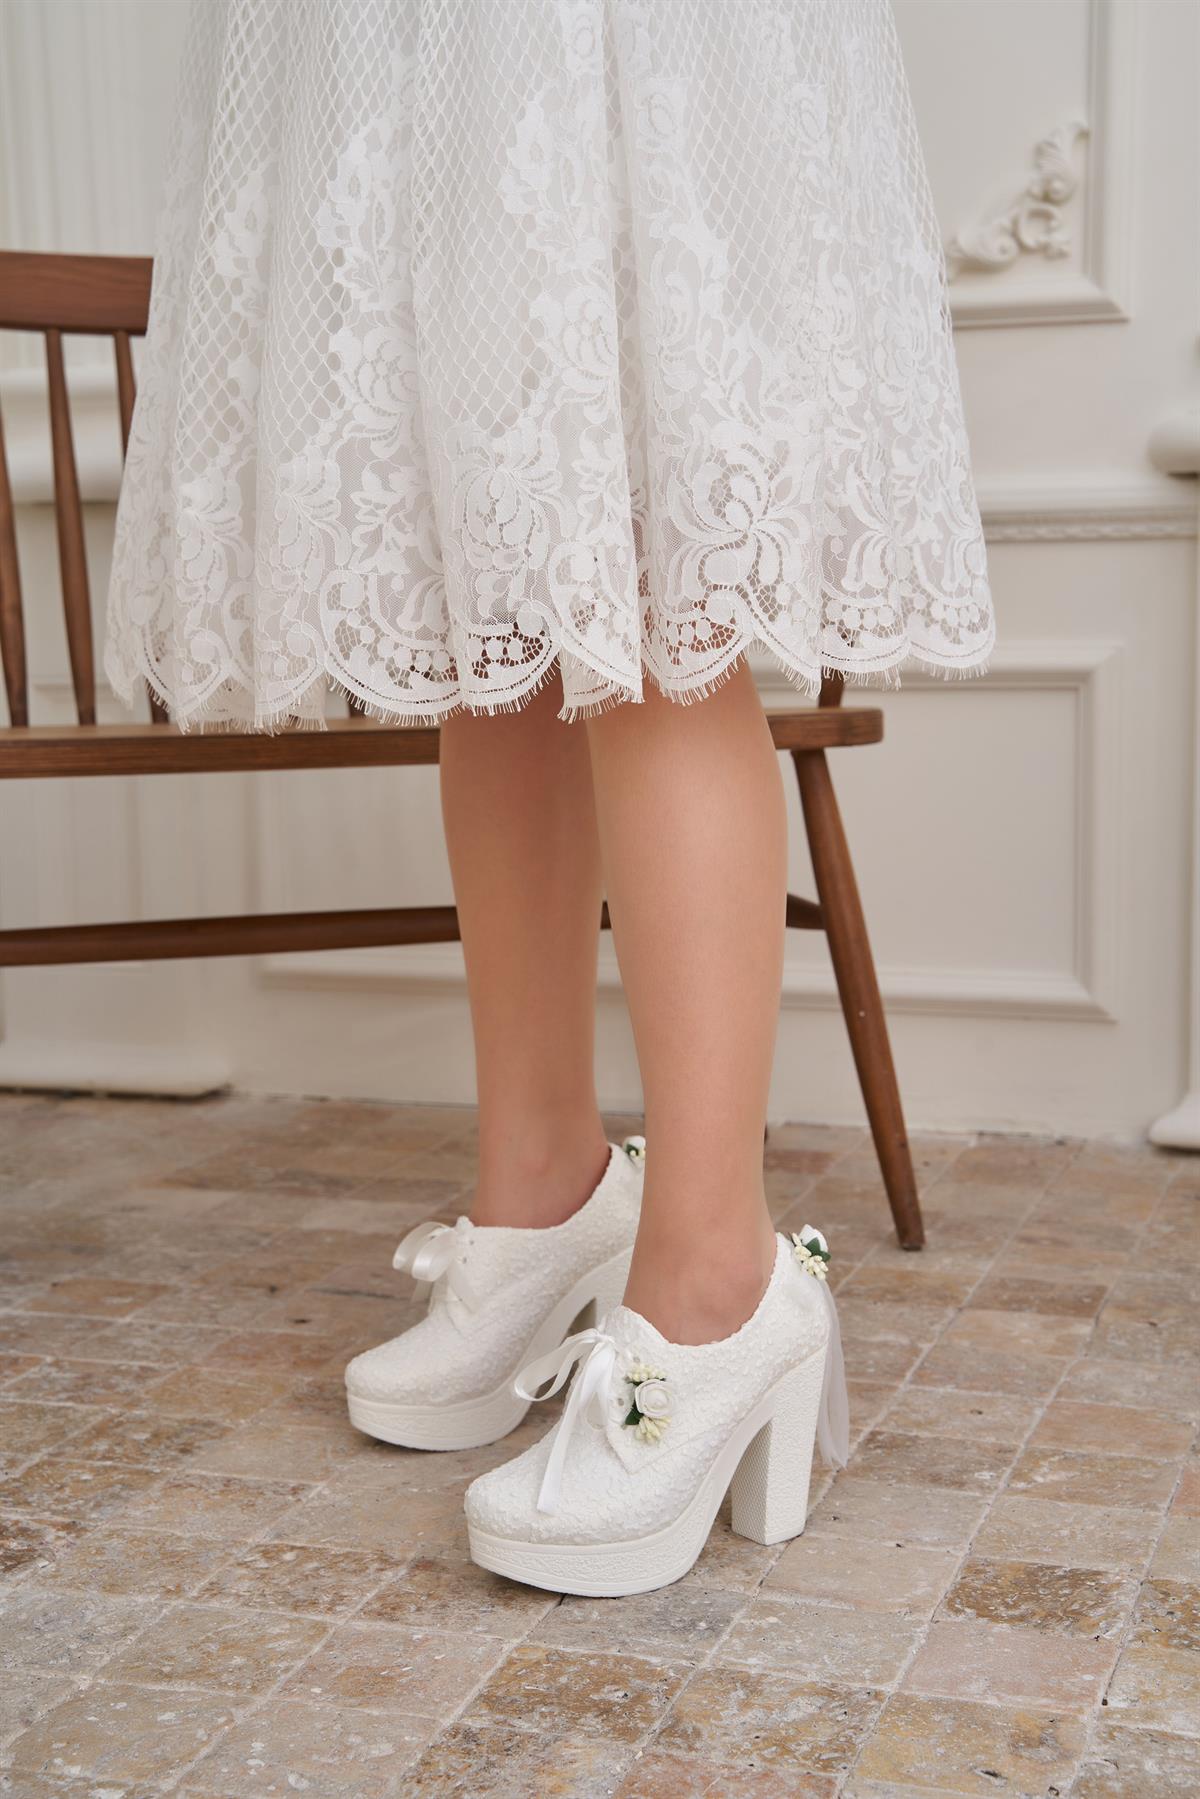 Endt Kadın Beyaz Çiçek Detaylı Kalın Topuklu Gelinlik Ayakkabısı